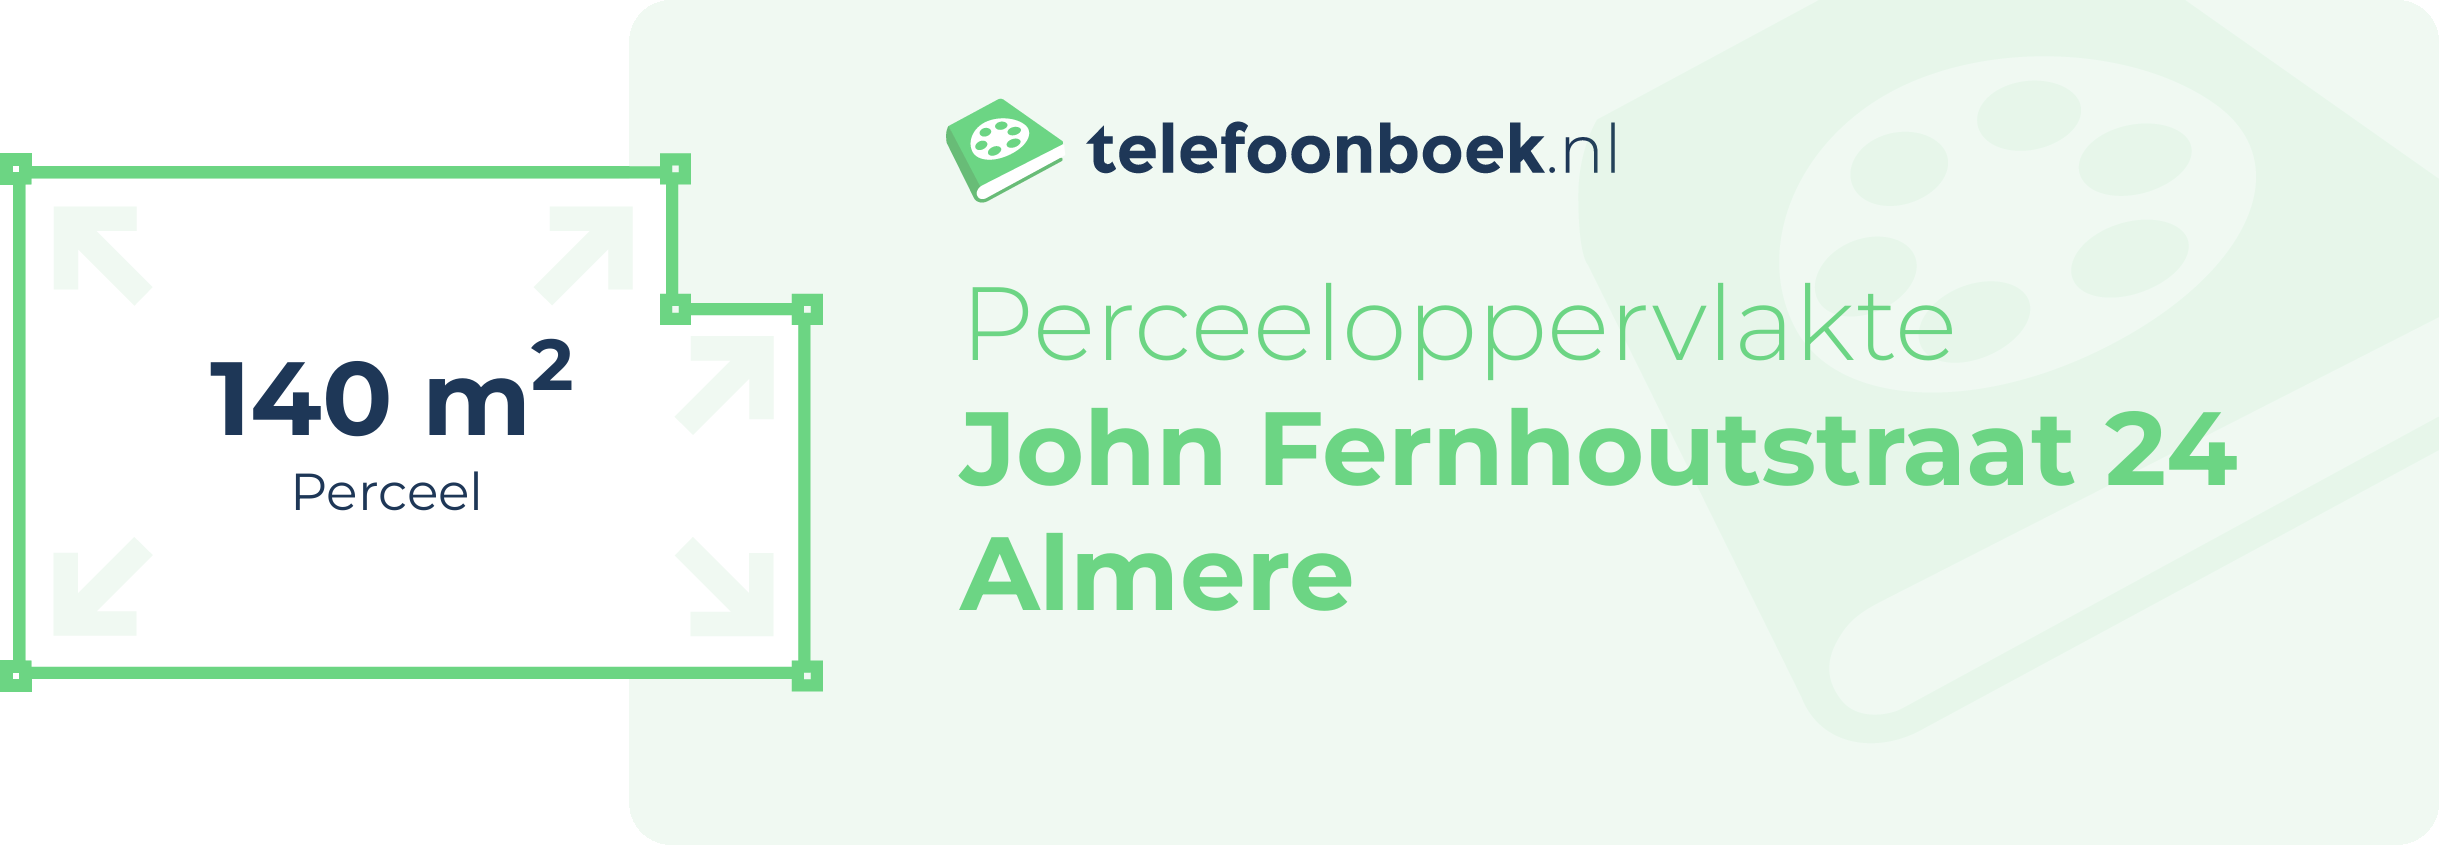 Perceeloppervlakte John Fernhoutstraat 24 Almere